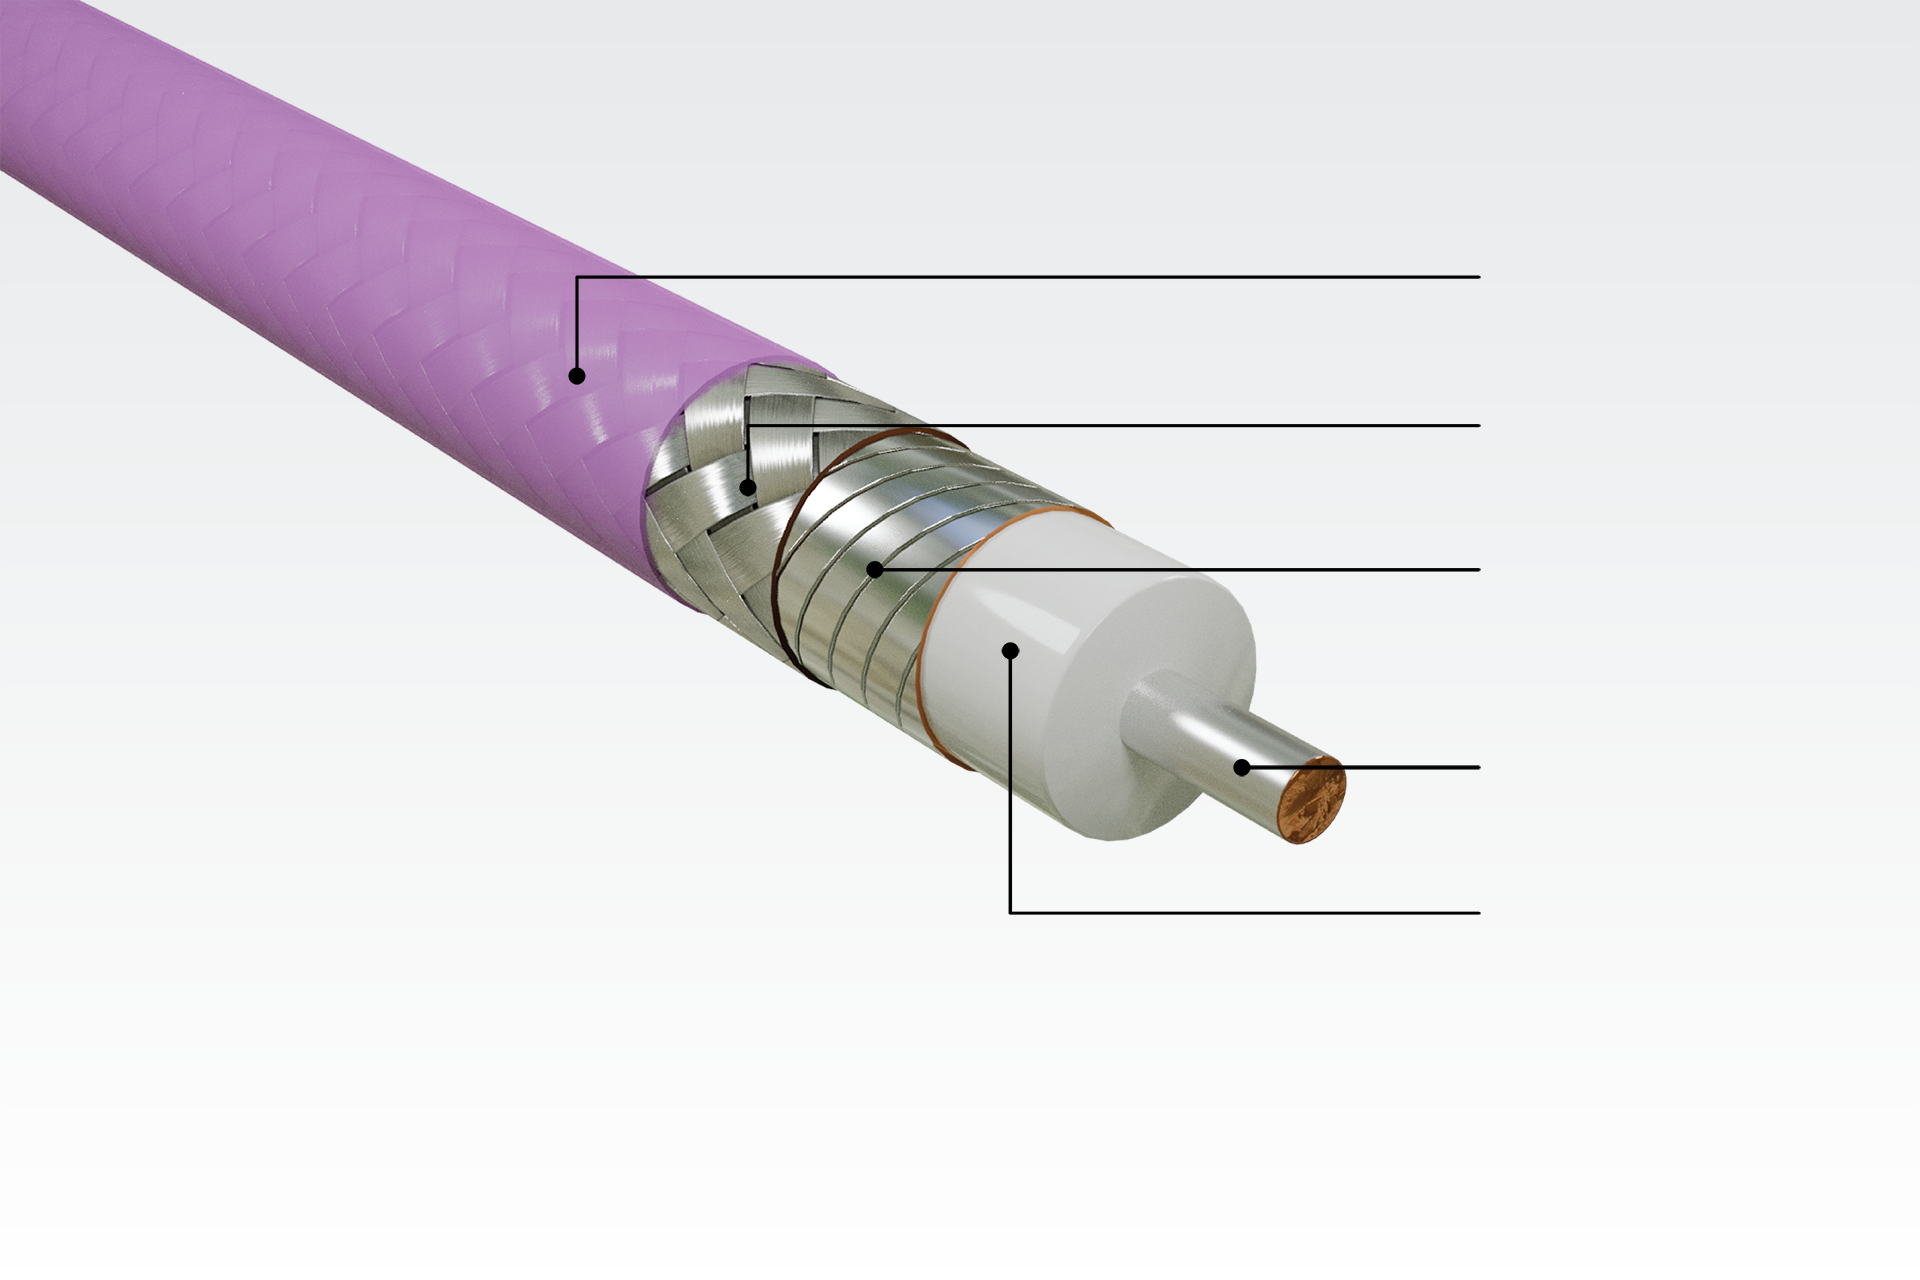 ゴアの汎用試験・相互接続用途向け同軸ケーブルの強靭で屈曲性の高い構造。